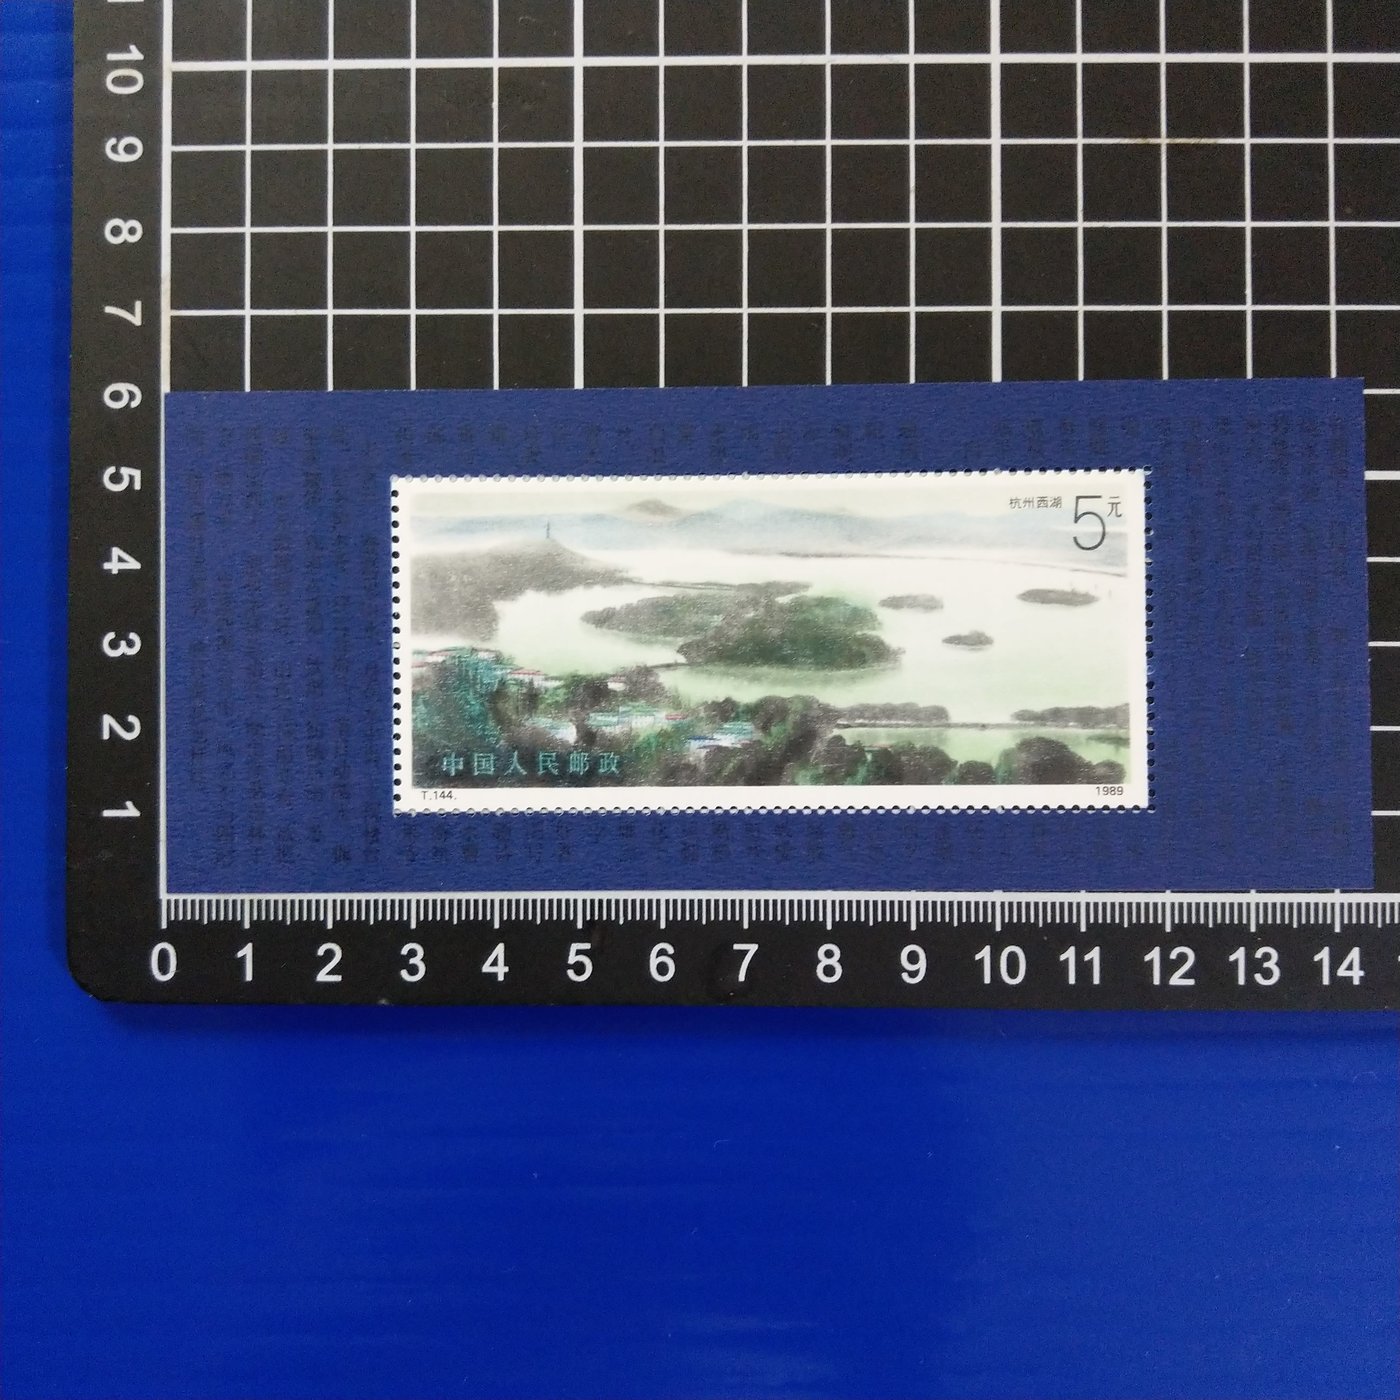 【大三元】中國大陸郵票-T144m 西湖小型張郵票-T144郵票-- 新票1張 